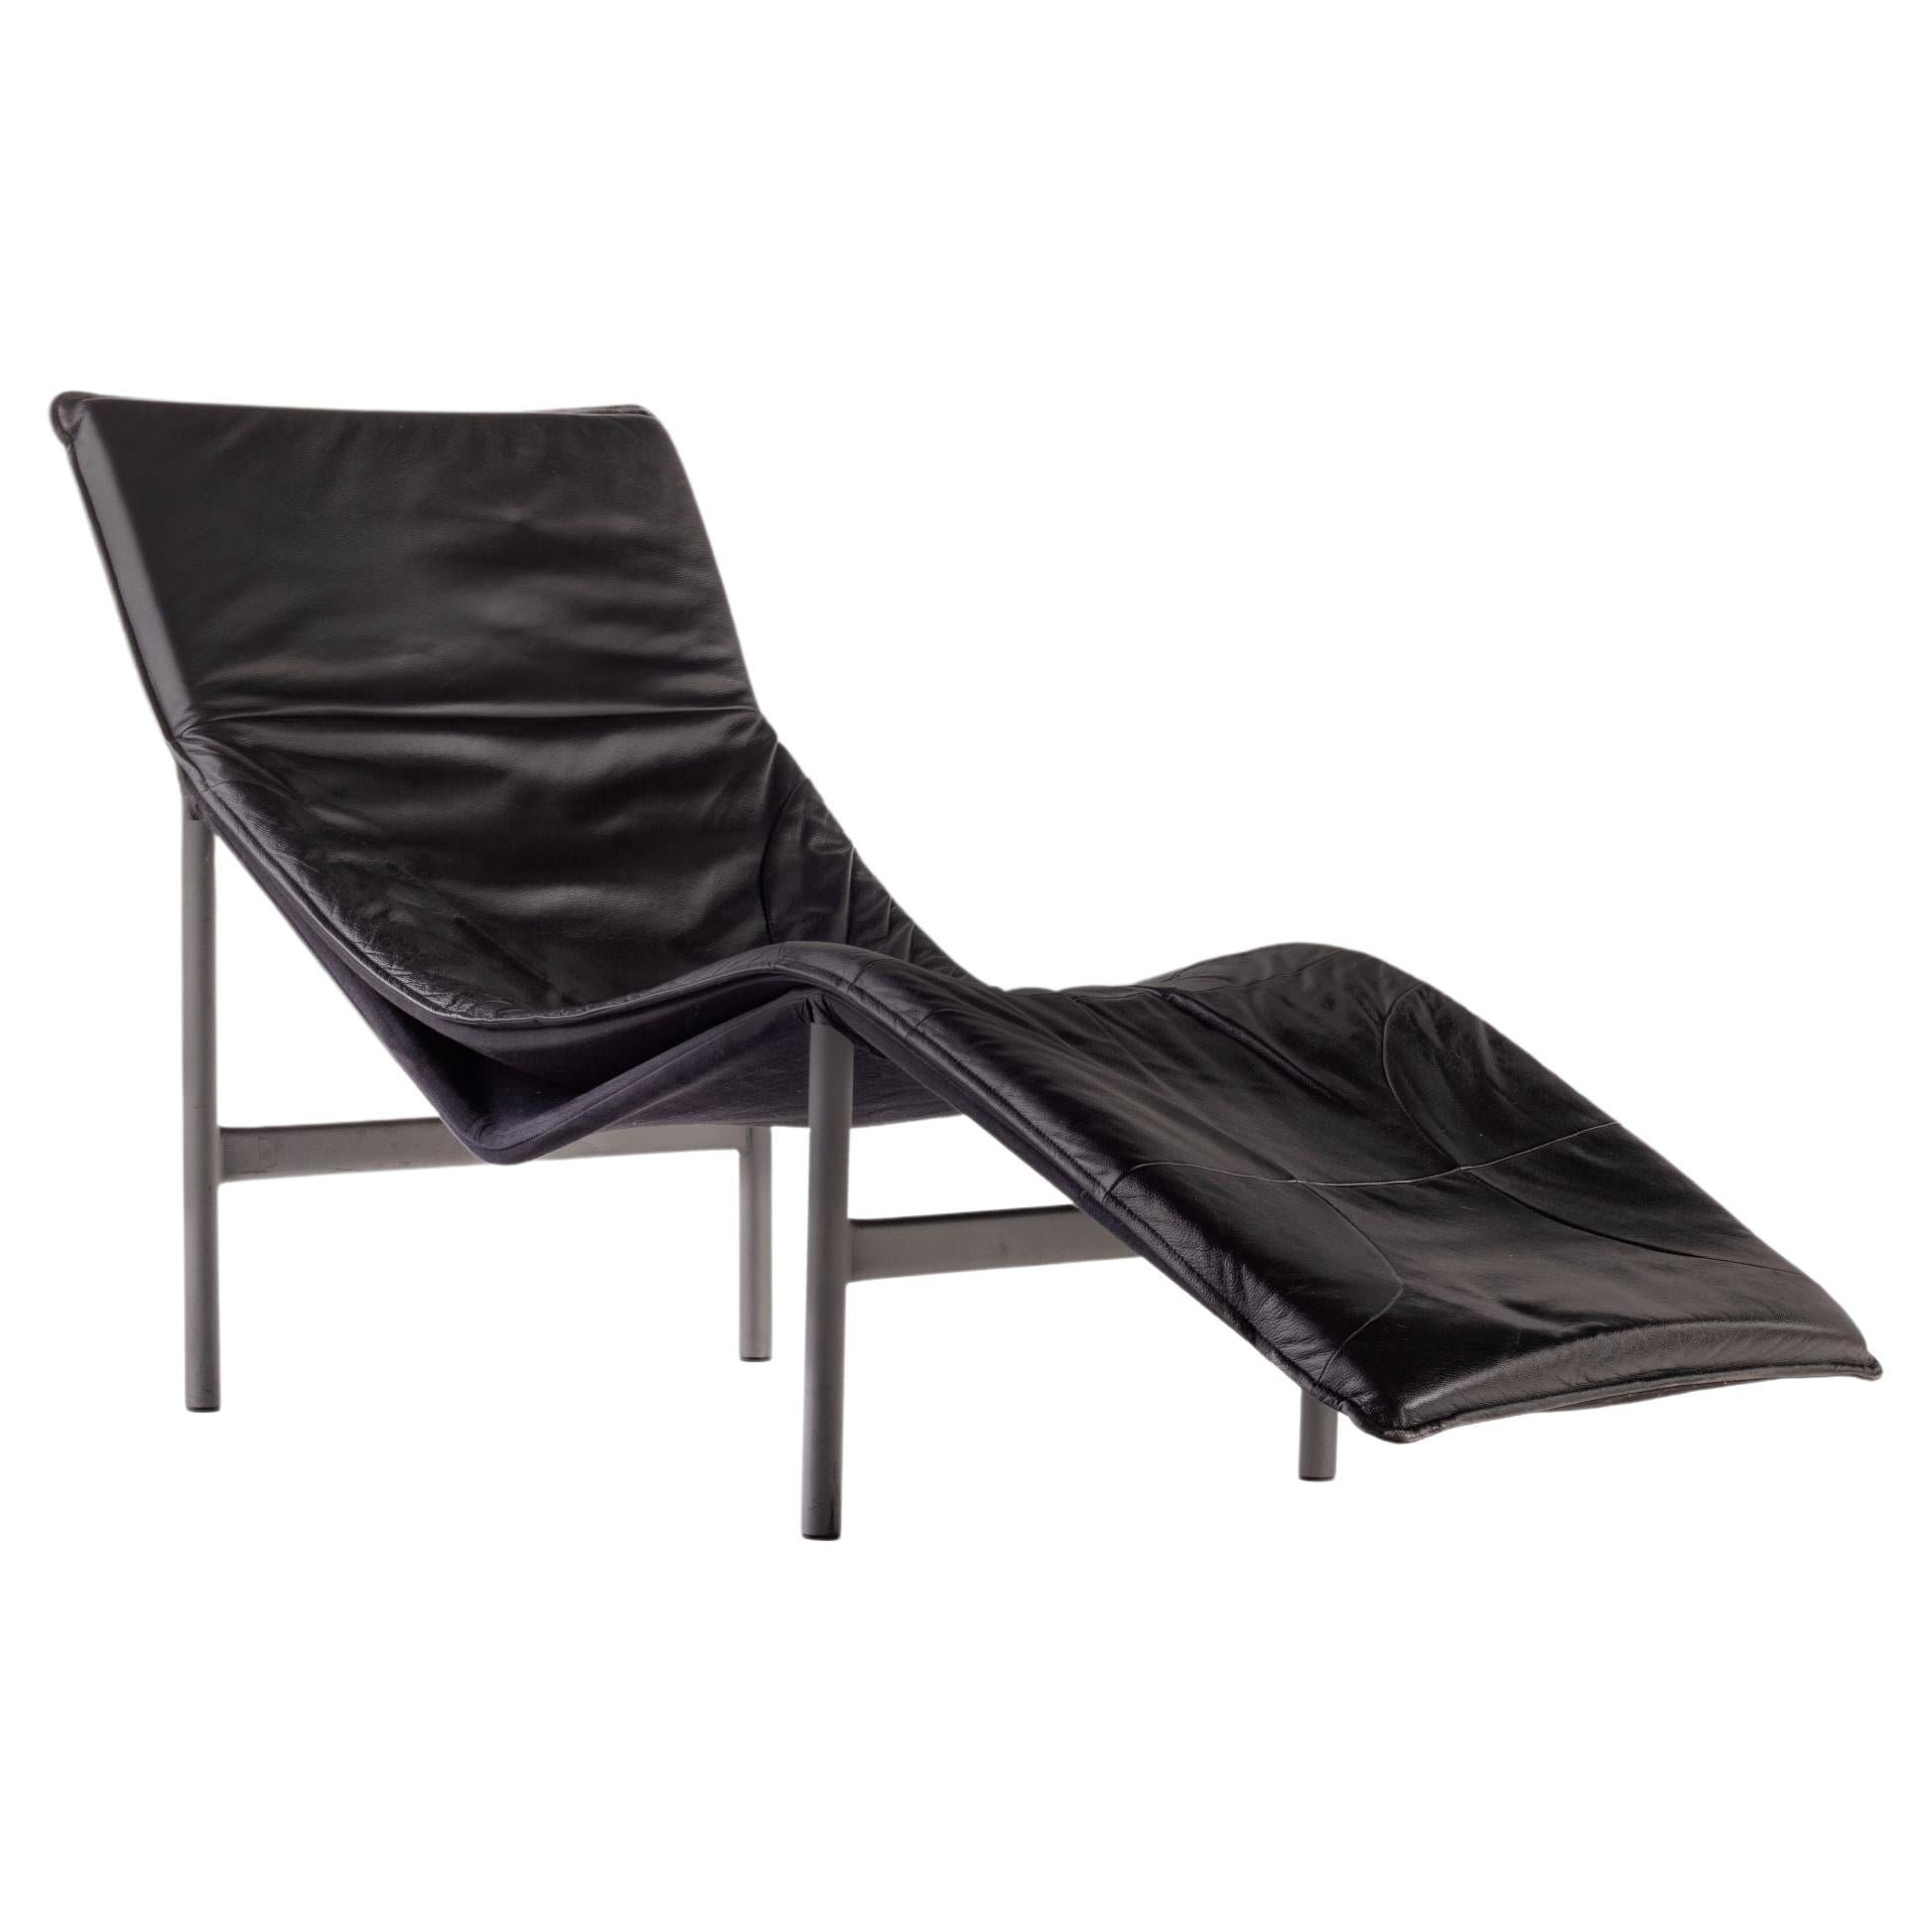 Moderner ""Skye"" Chaise Lounge Chair aus Leder von Tord Björklund, Schweden, um 1970